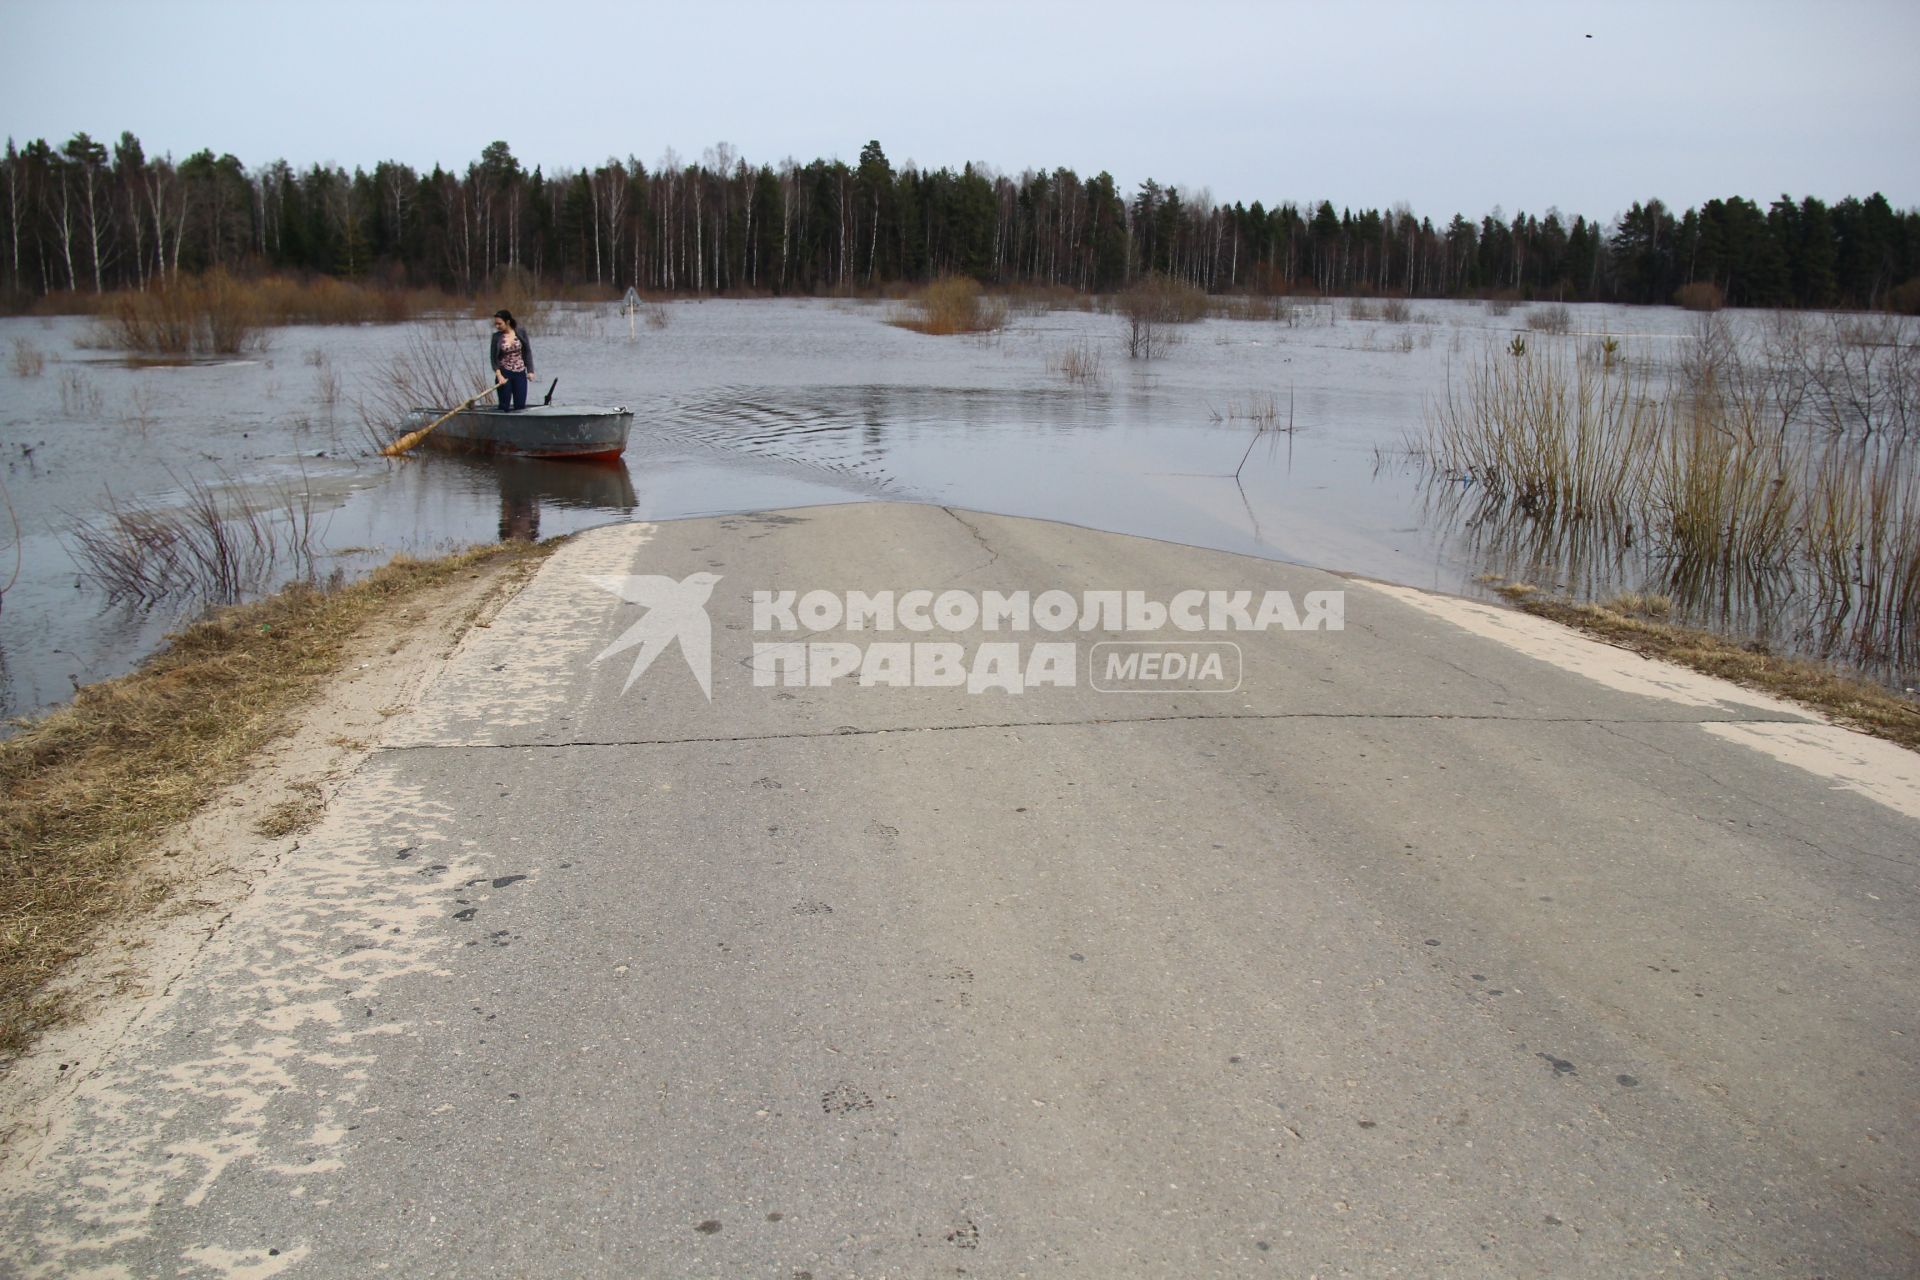 Паводок на реке Уста Уренского района Нижегородской области. Затопленная автомобильная дорога. Девушка в весельной лодке на река во время паводка.